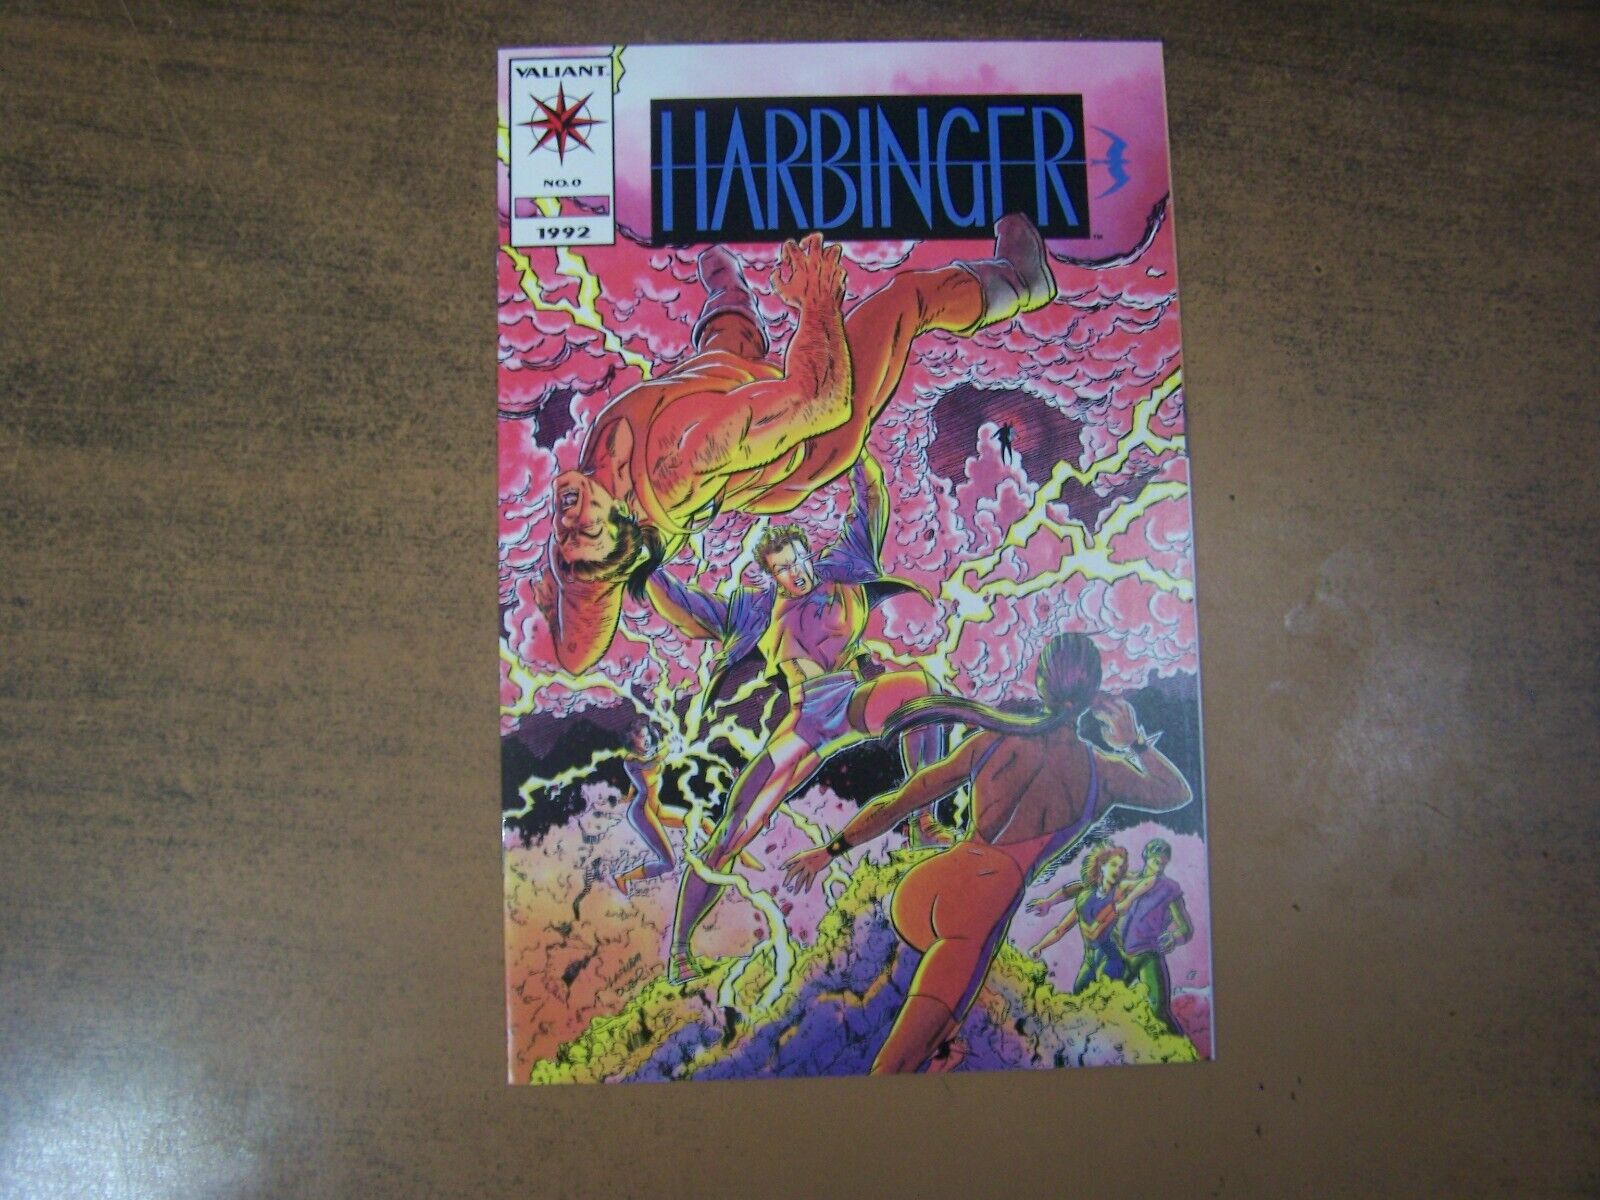 Harbinger #0 pink cover valiant 1992